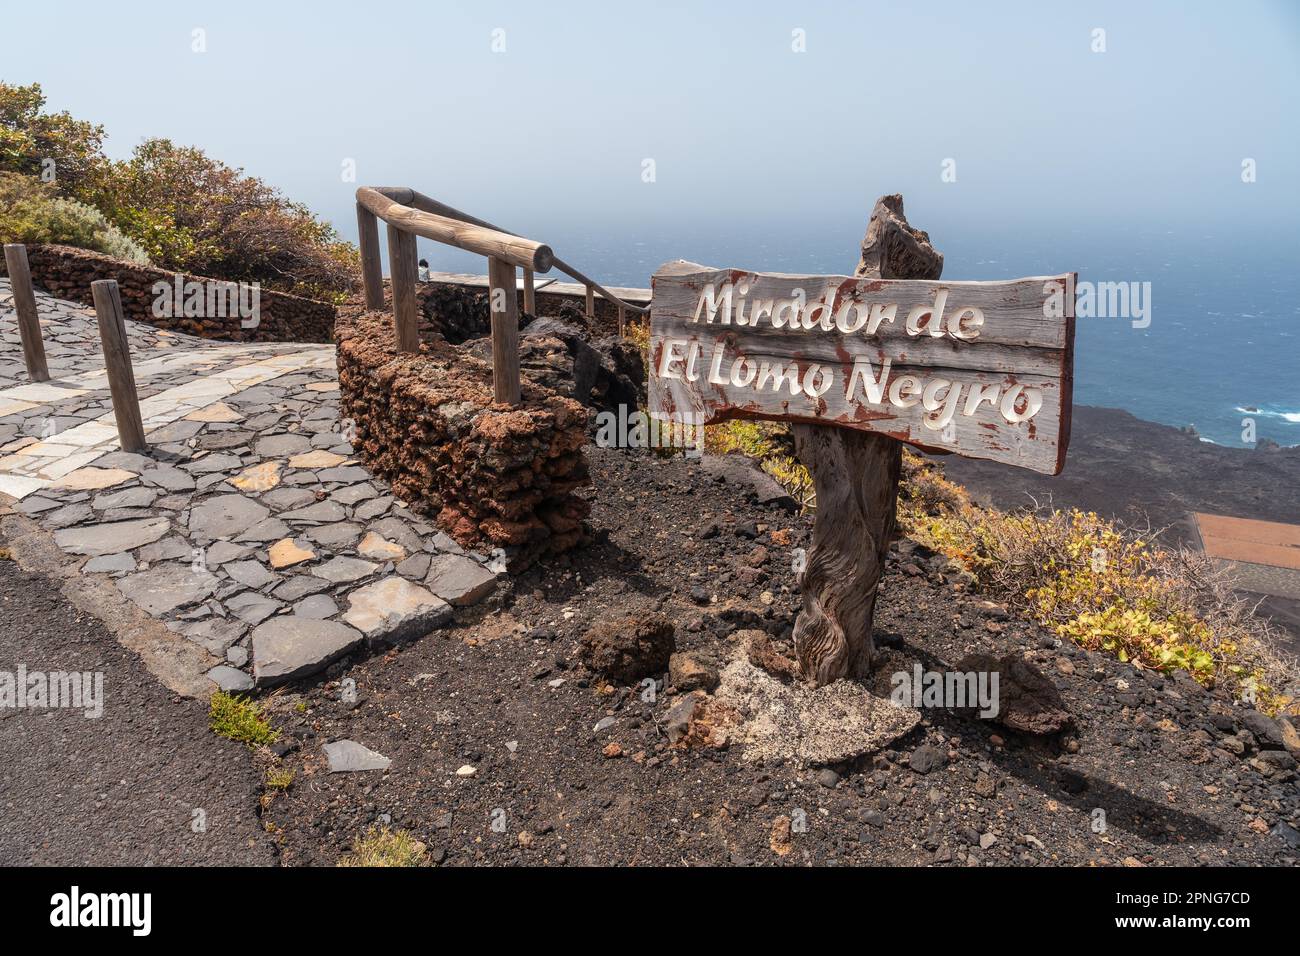 Signe informatif du point de vue du loin noir sur la côte sud-ouest d'El Hierro. Îles Canaries Banque D'Images